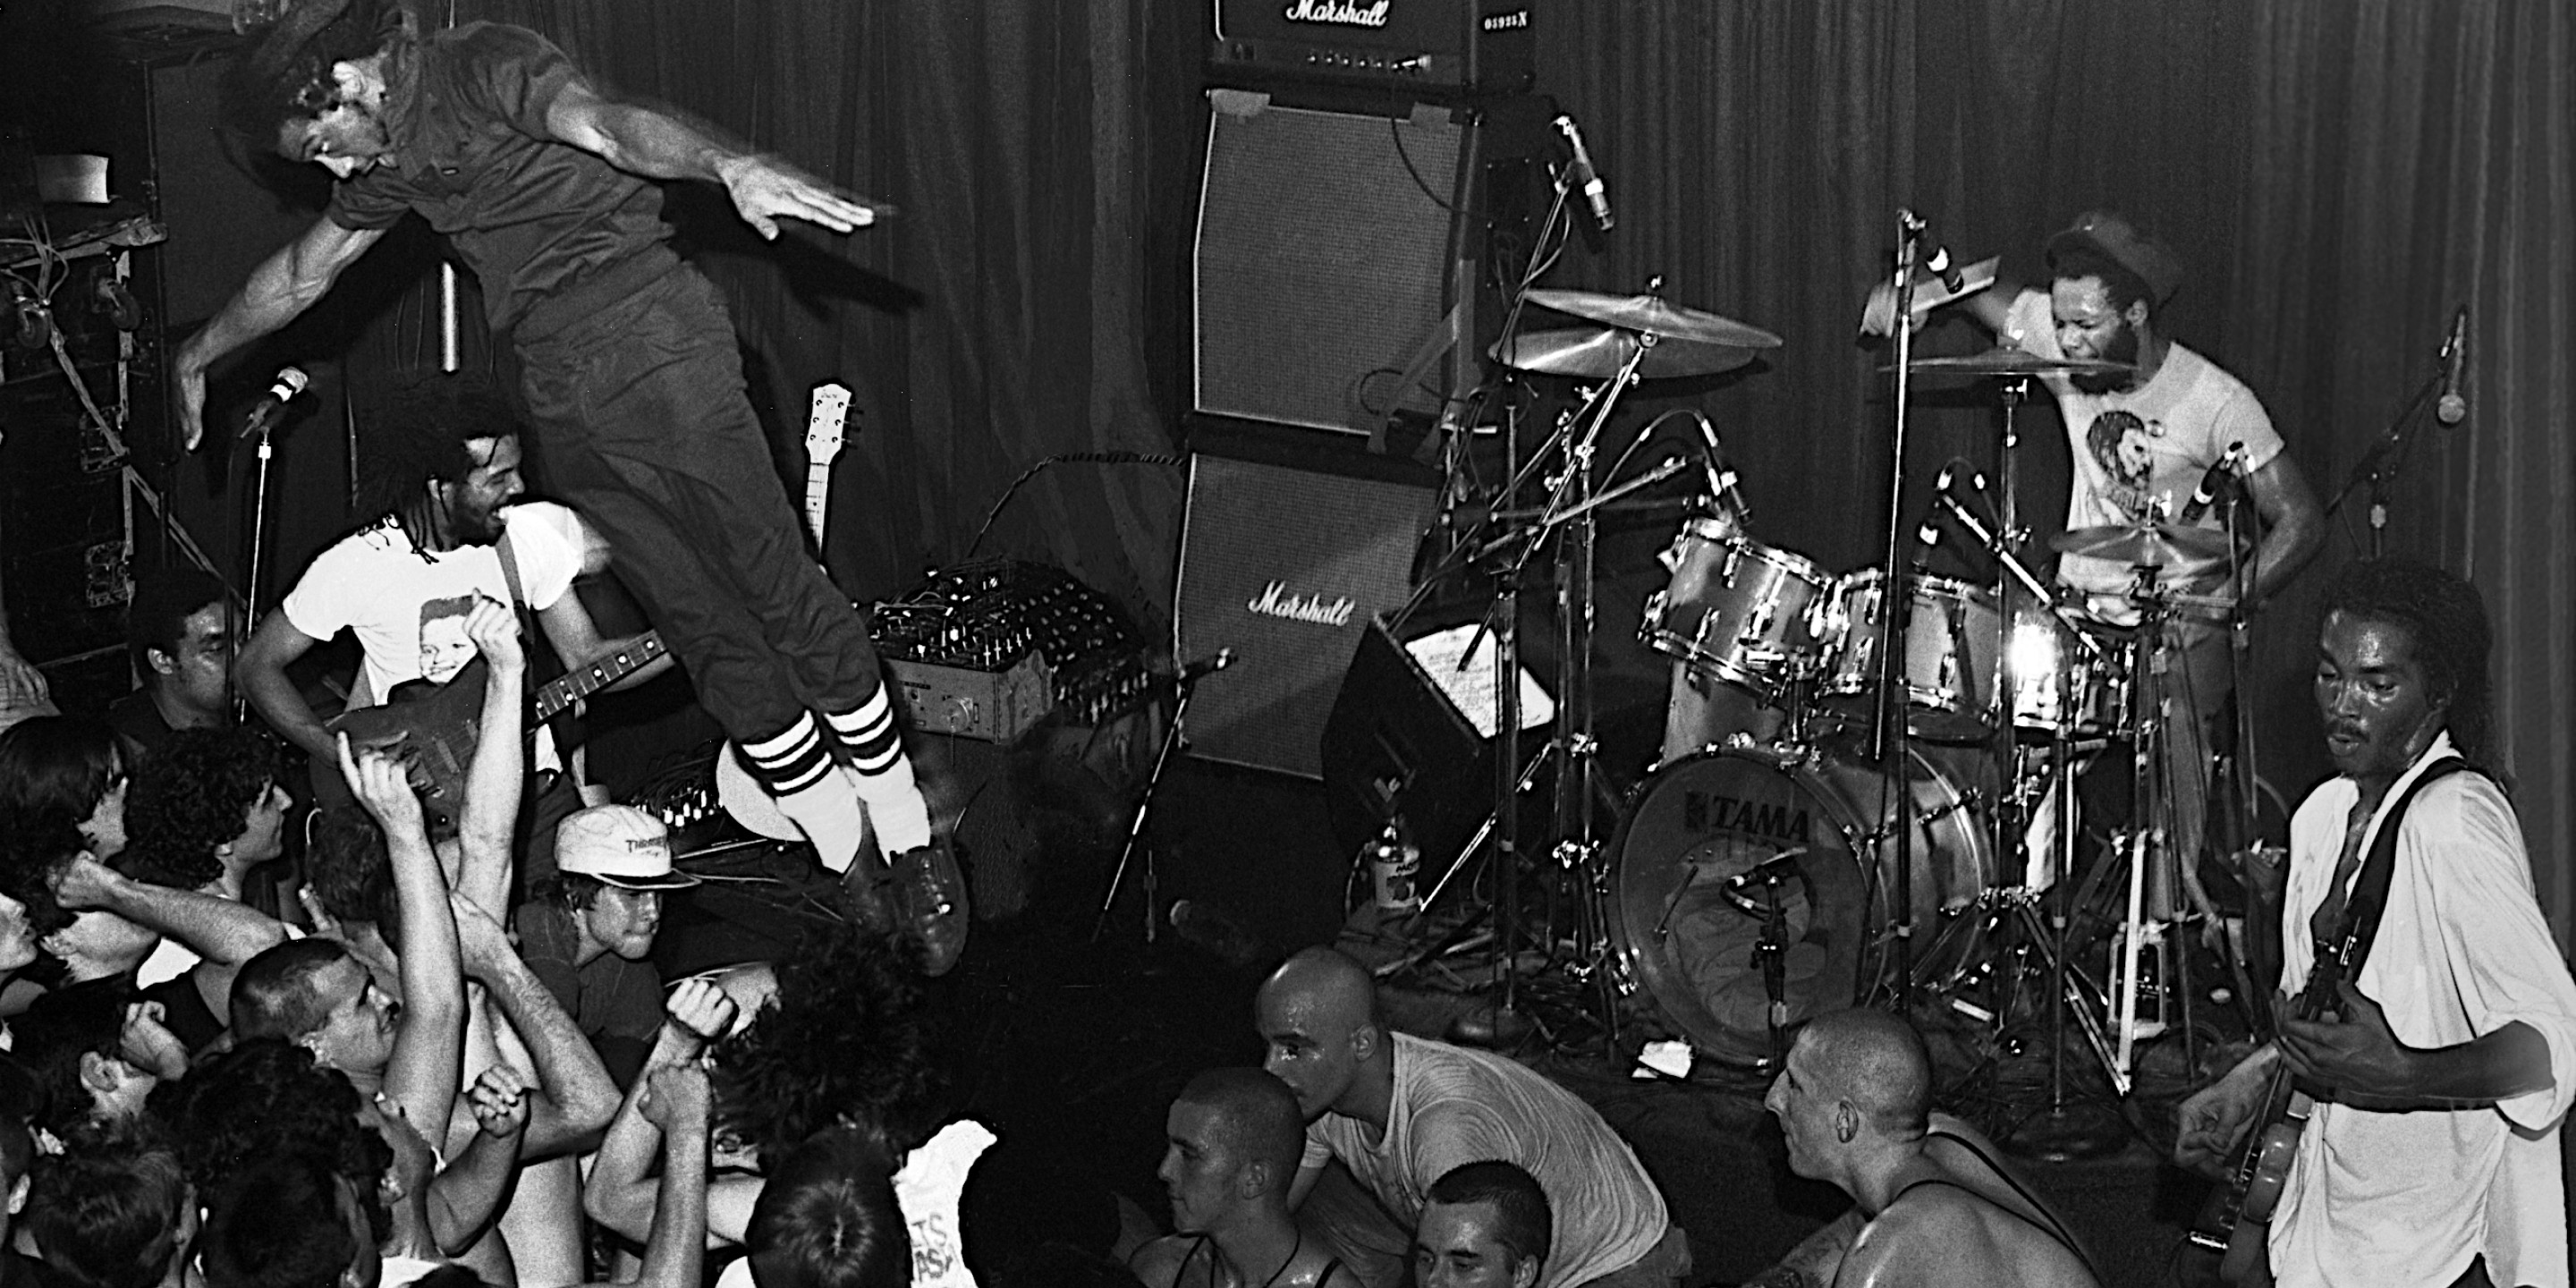 Schwarz-Weiß-Foto eines Musikers, der mit Marshall-Verstärkern auf der Bühne in die Menge springt.